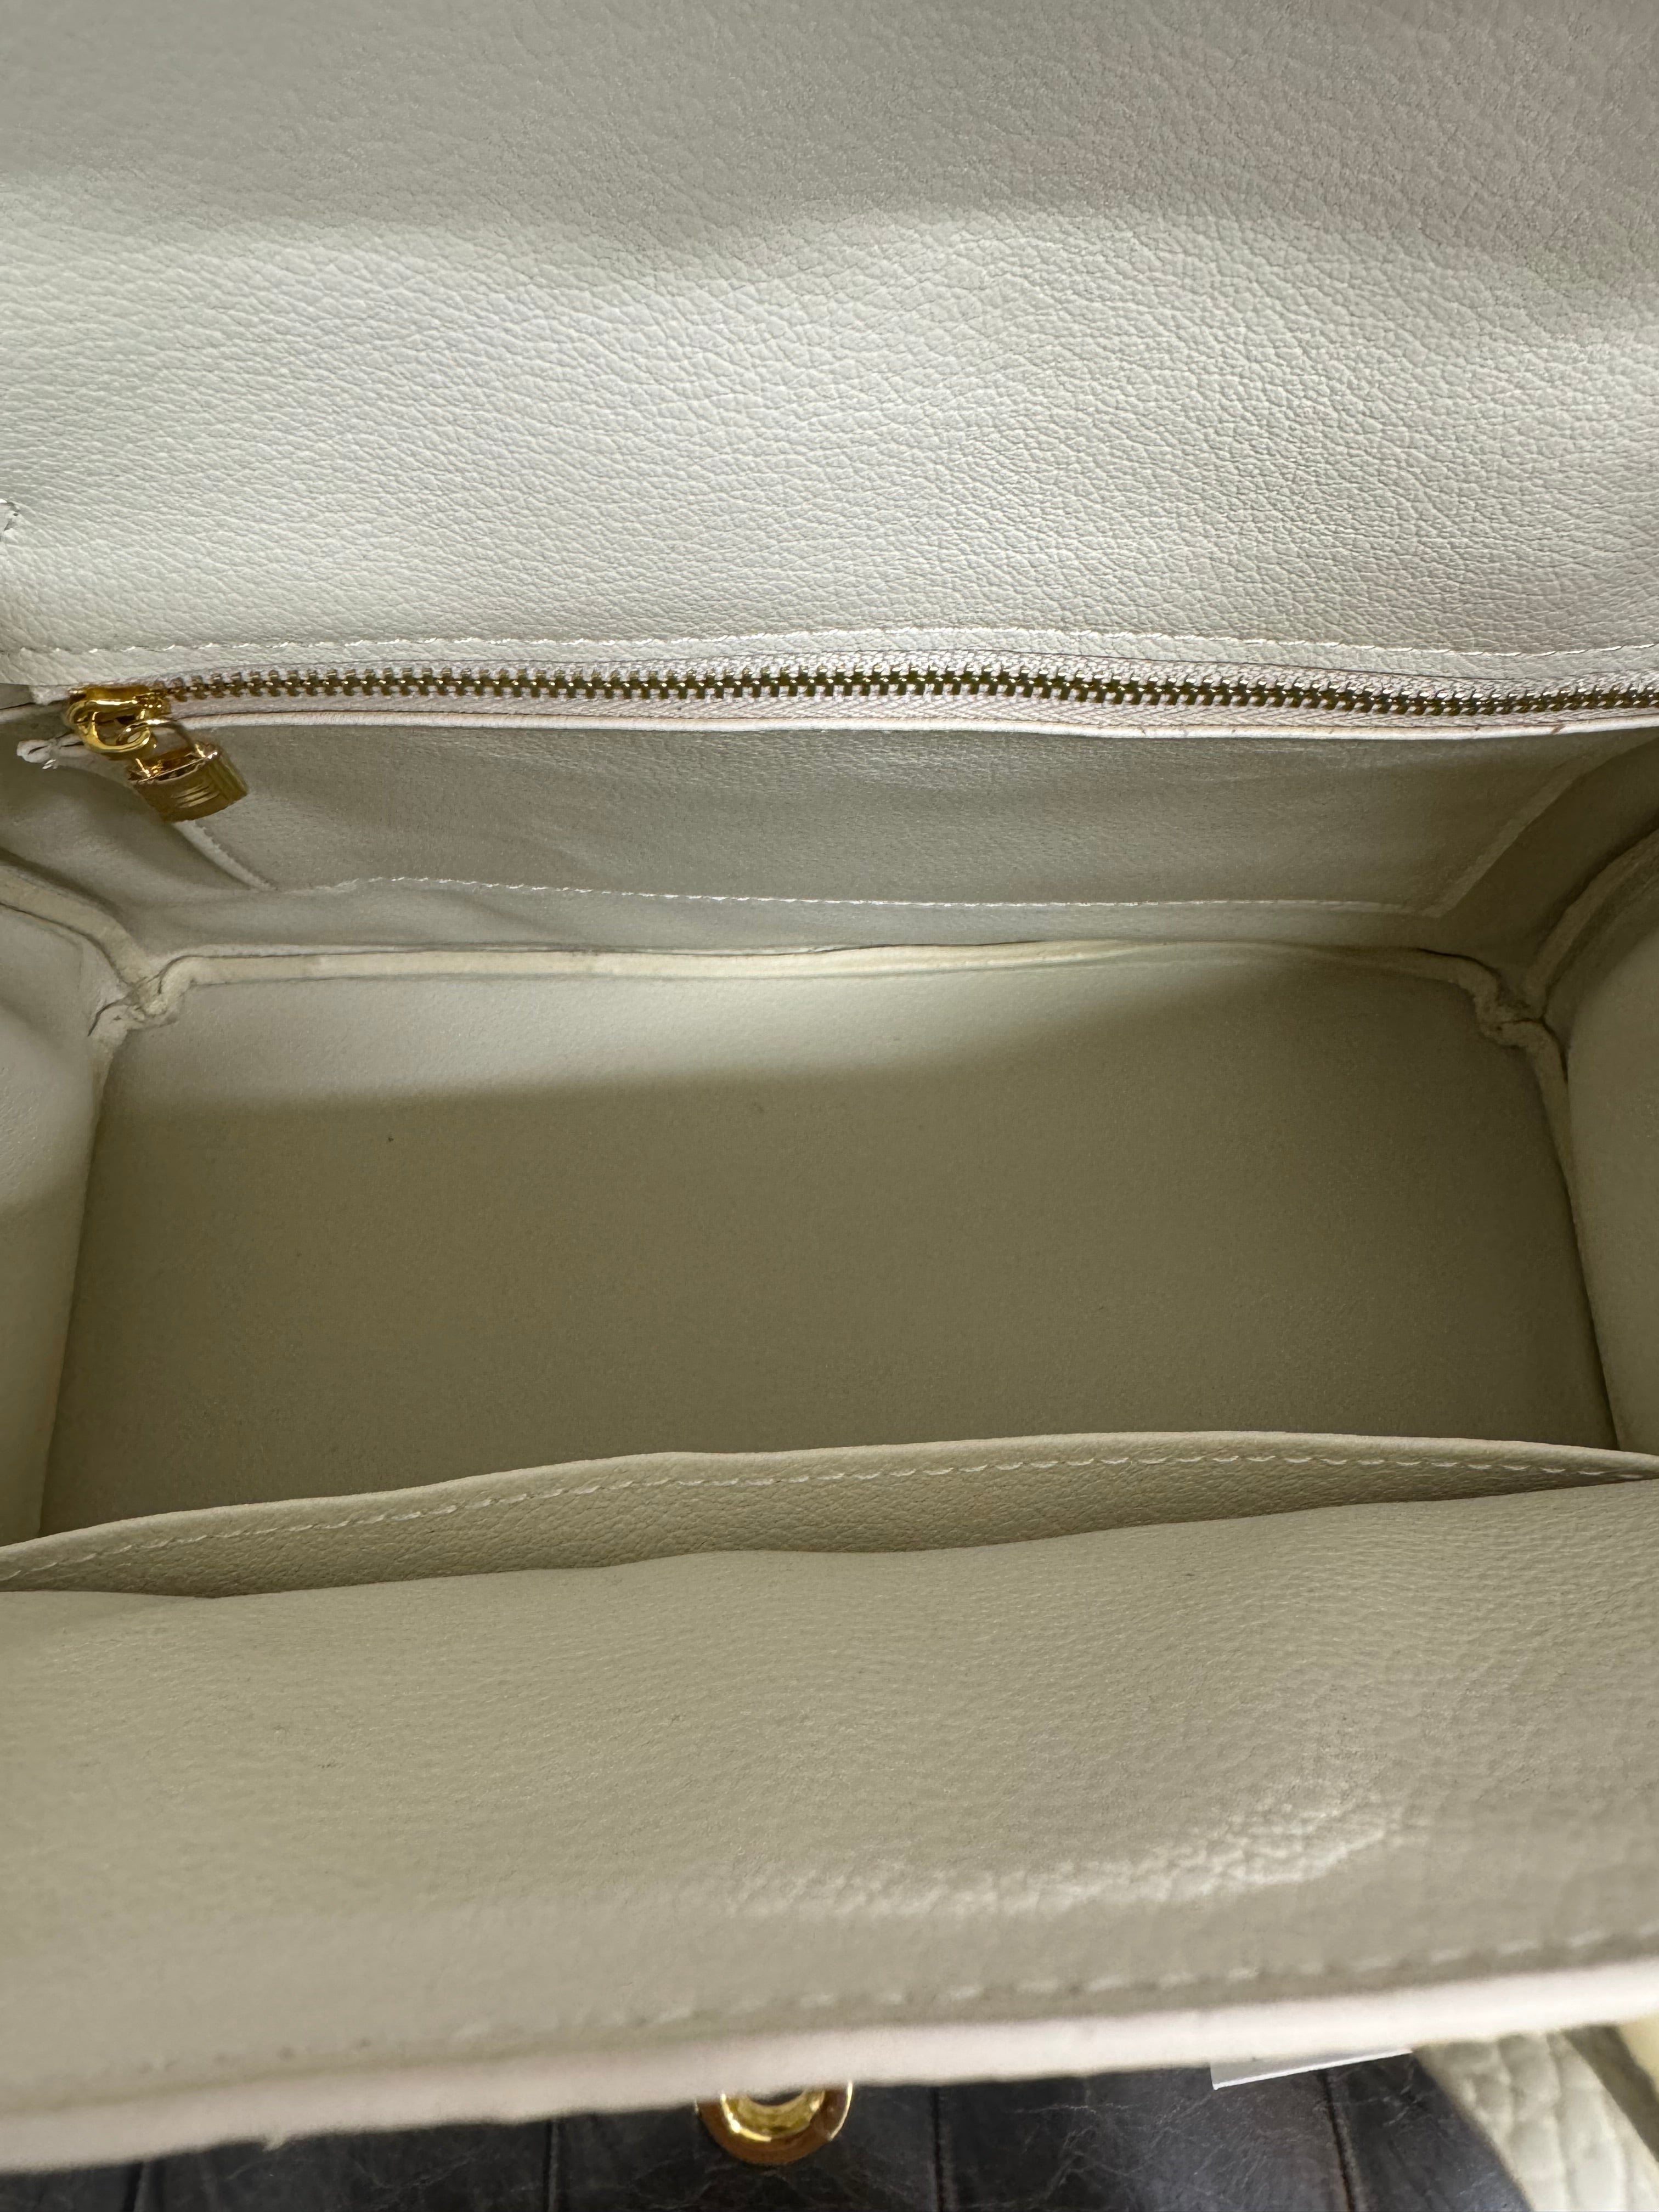 Jellicoe Priscilla Leather Handbag Cream